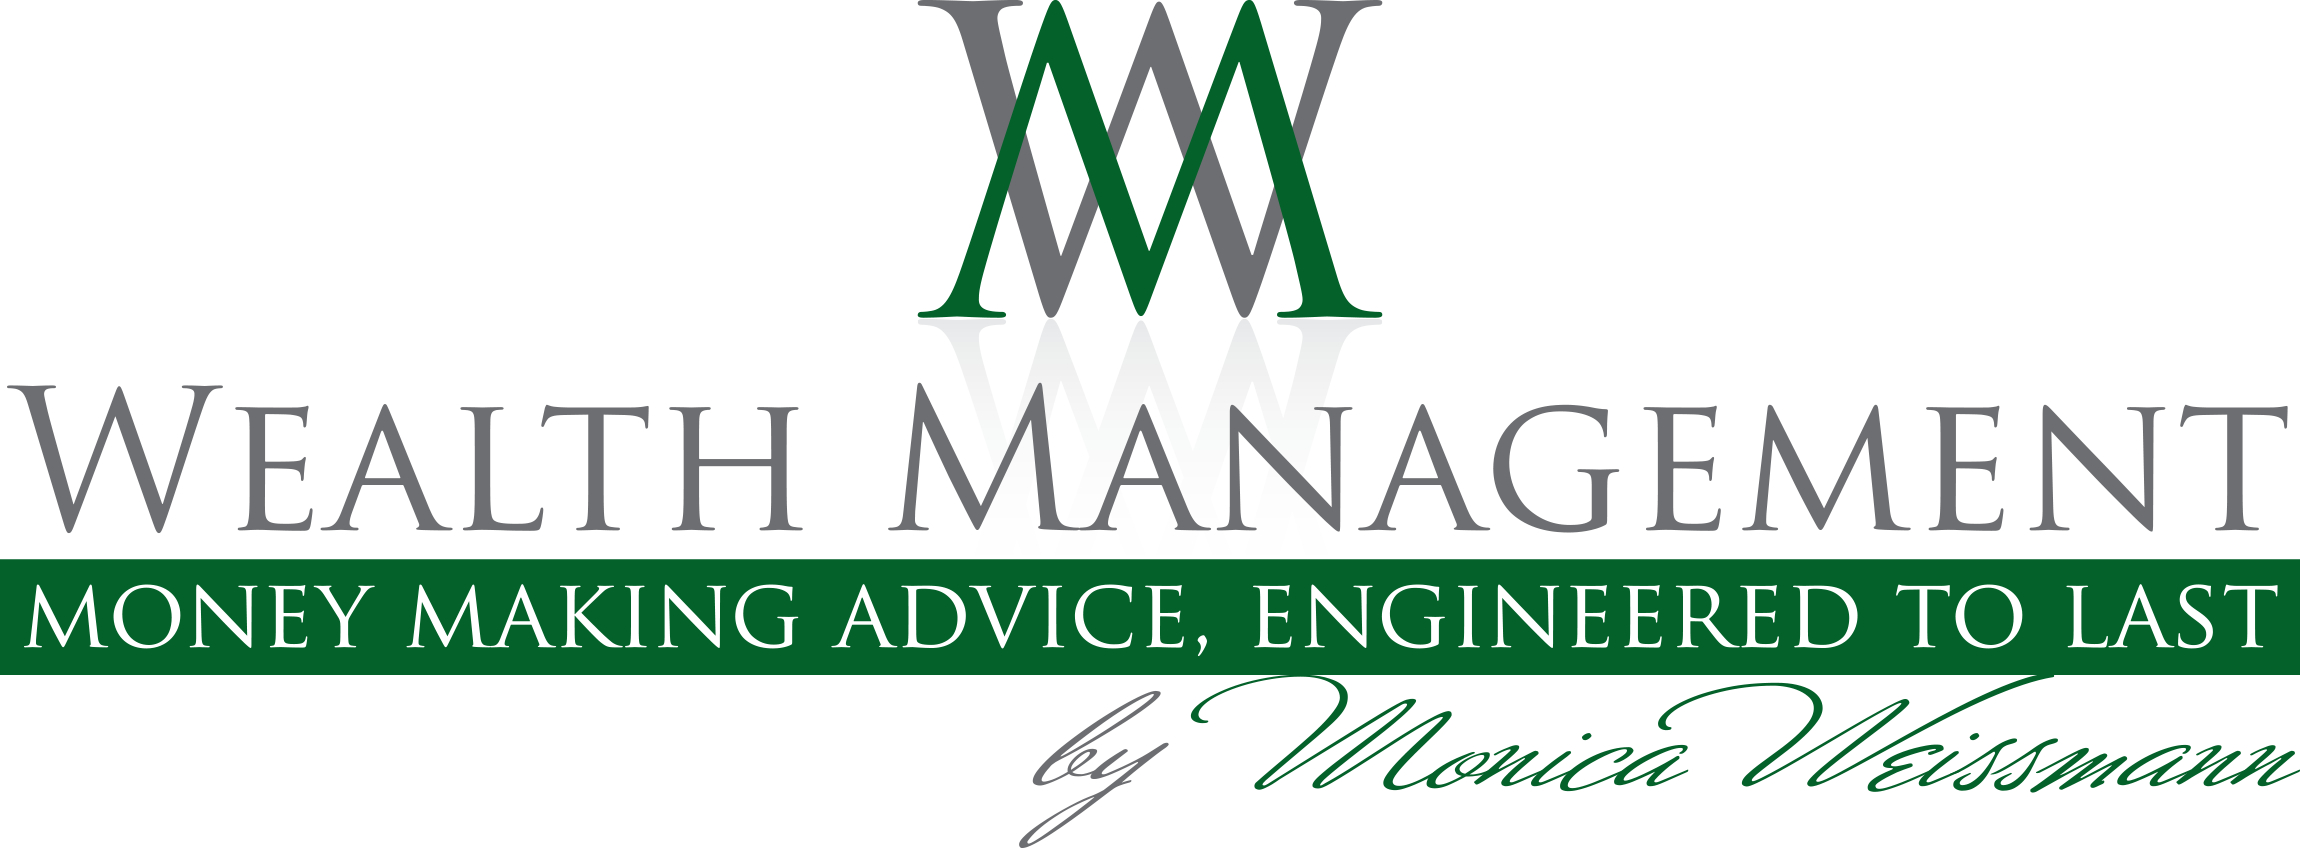 Wealth Management by Monica Weissmann